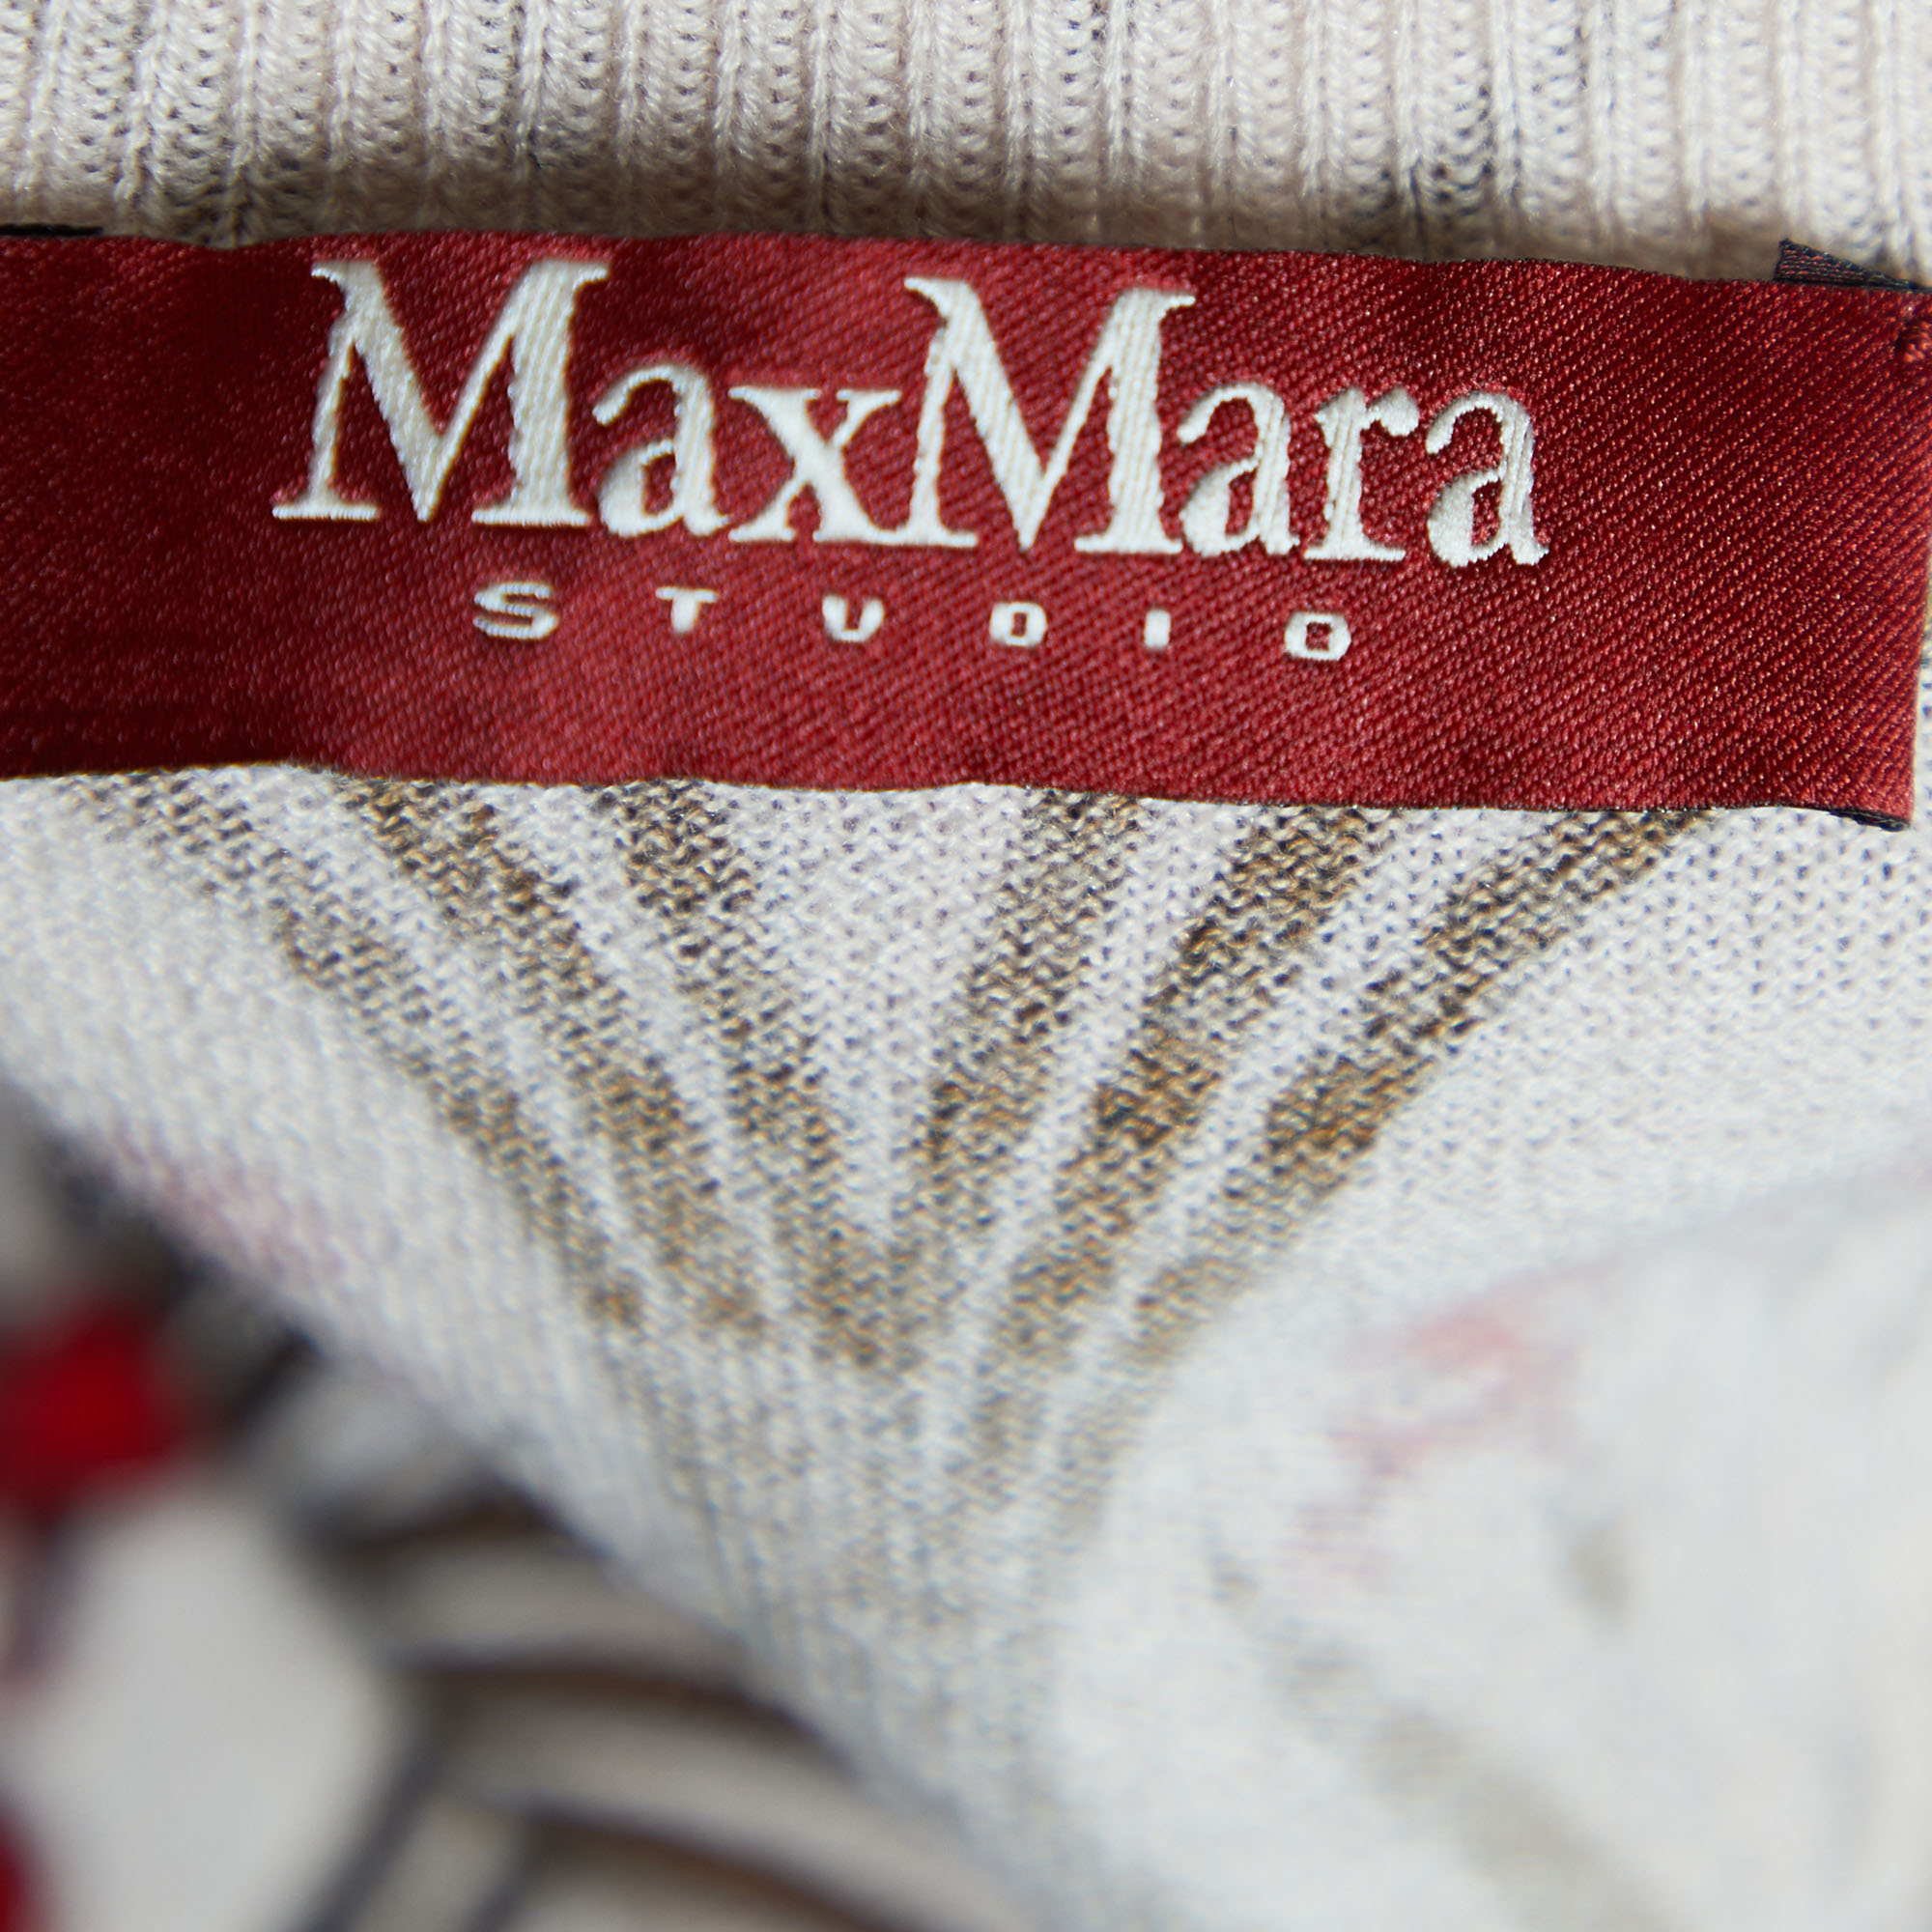 Max Mara Studio Beige Floral Print Wool & Silk Knit Top XL